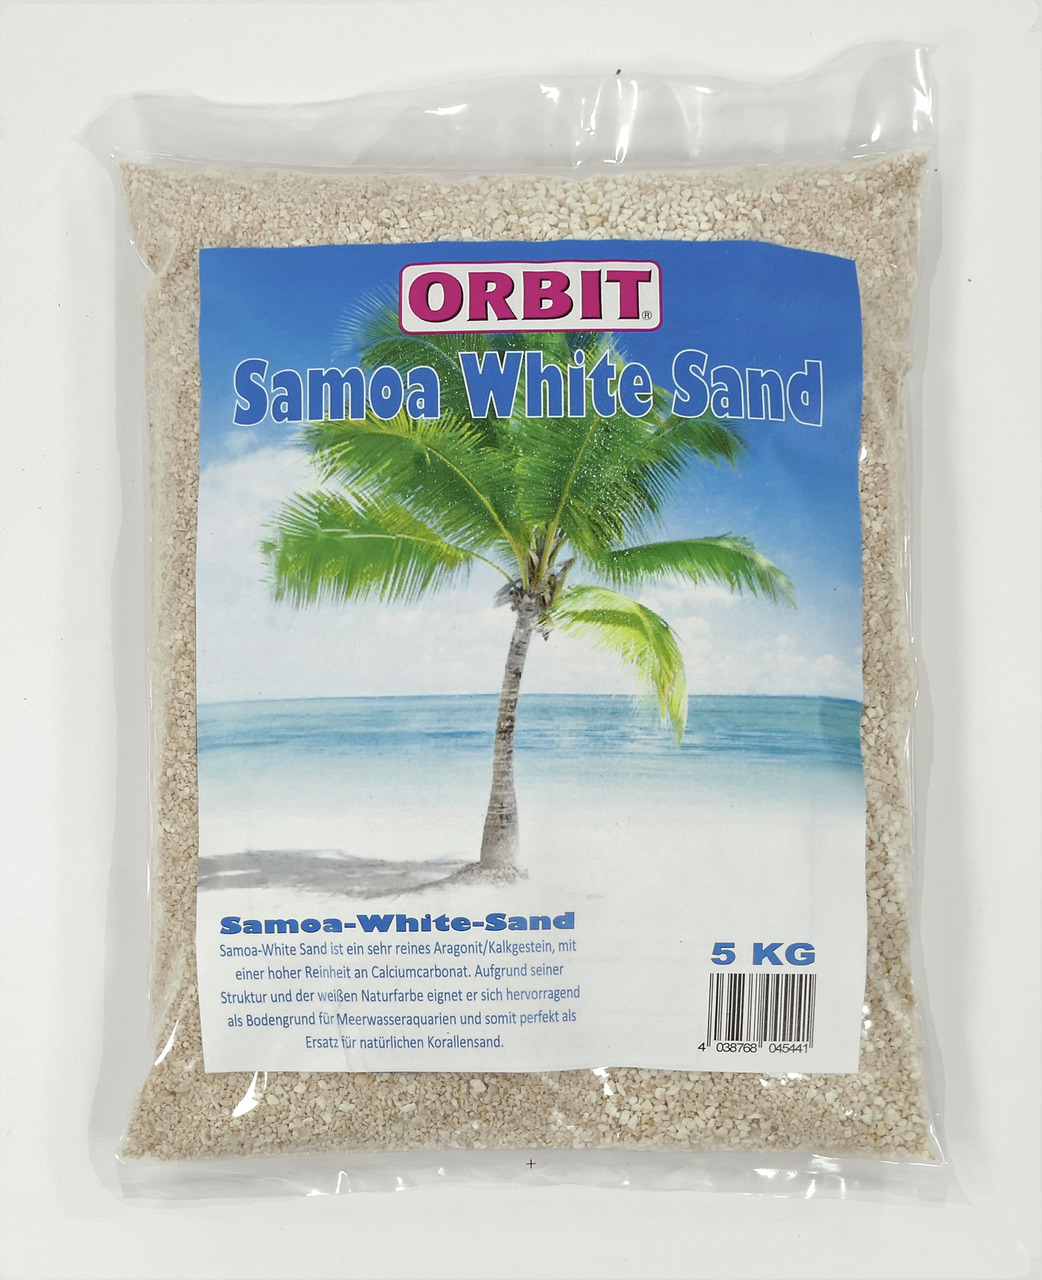 Orbit Samoa White Sand Aquarium Bodengrund 0,5 - 1,2 mm 5 kg